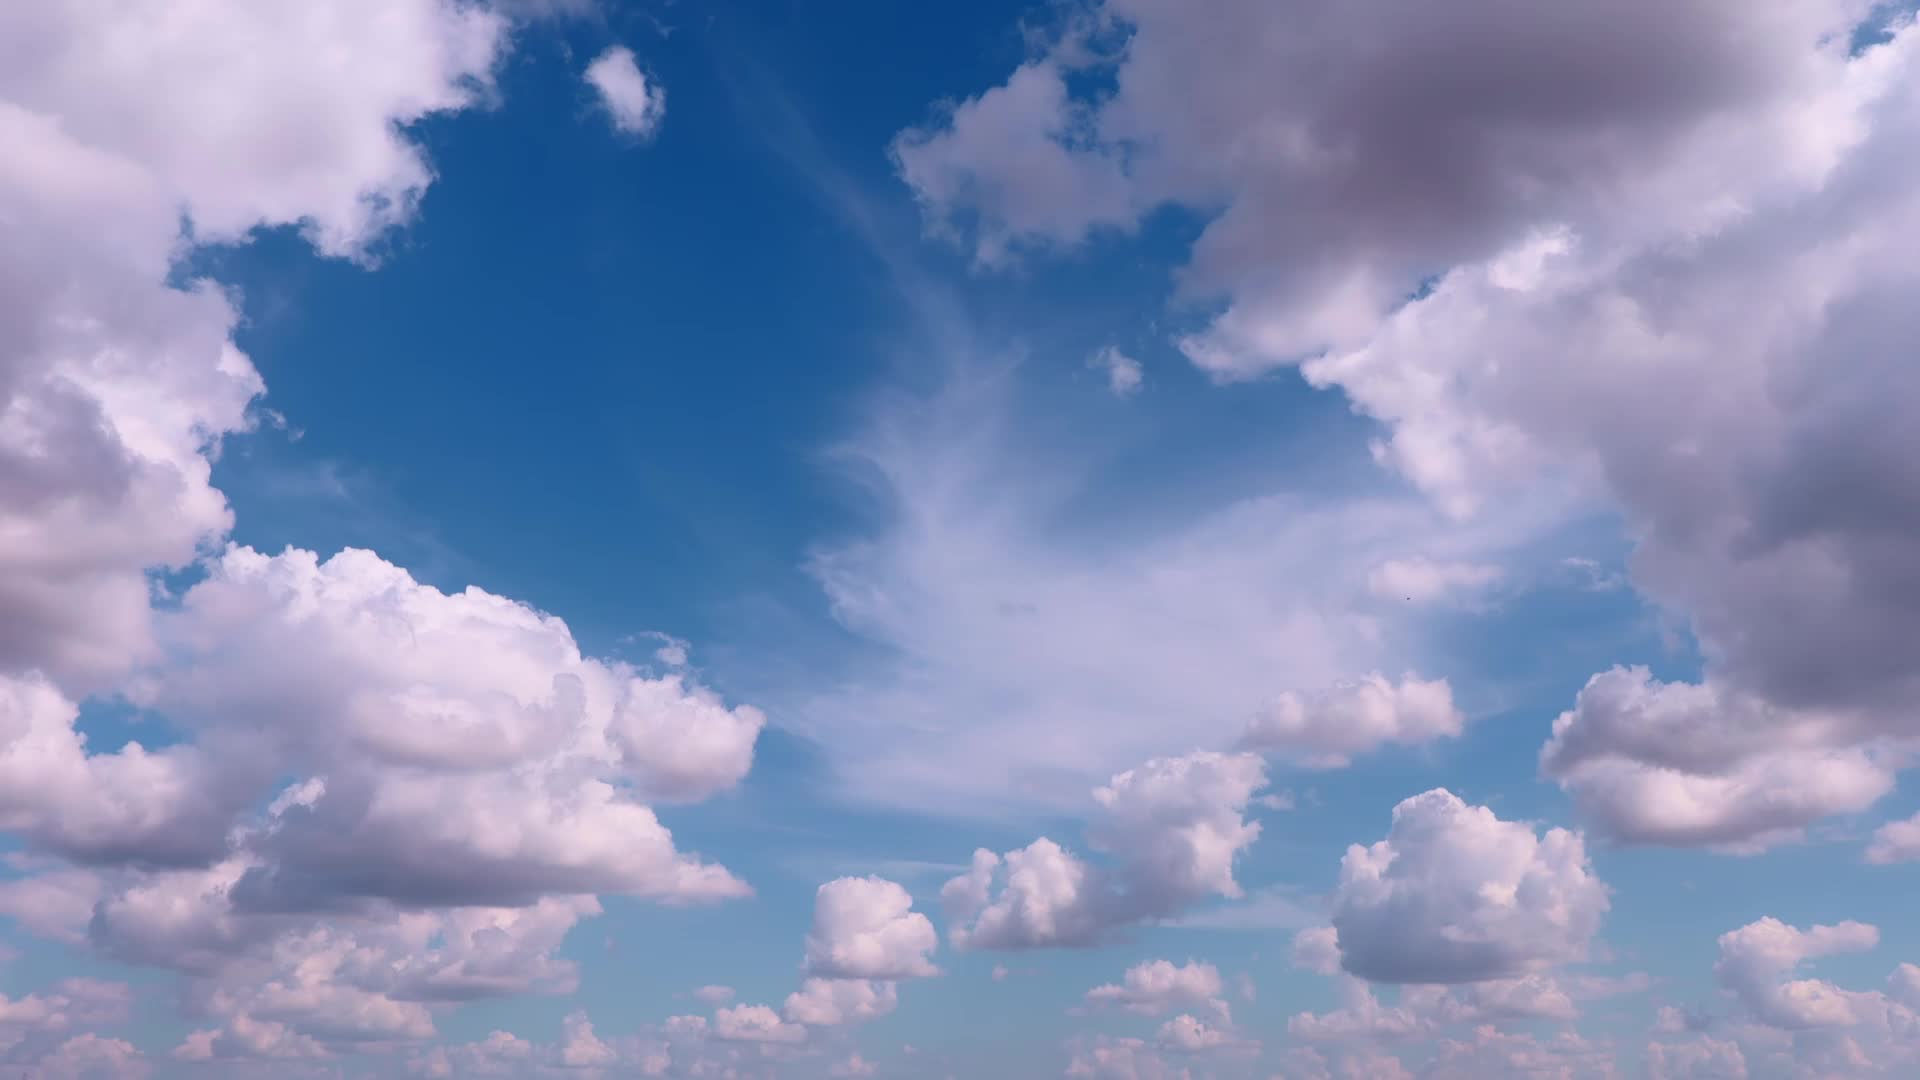 Bạn đang tìm kiếm một video chuyển động của bầu trời đẹp như mơ để thưởng thức? Hãy tải ngay video miễn phí này để có thể chiêm ngưỡng những tia nắng vàng rực rỡ thoáng qua những đám mây đổ bóng bỗng nhiên.